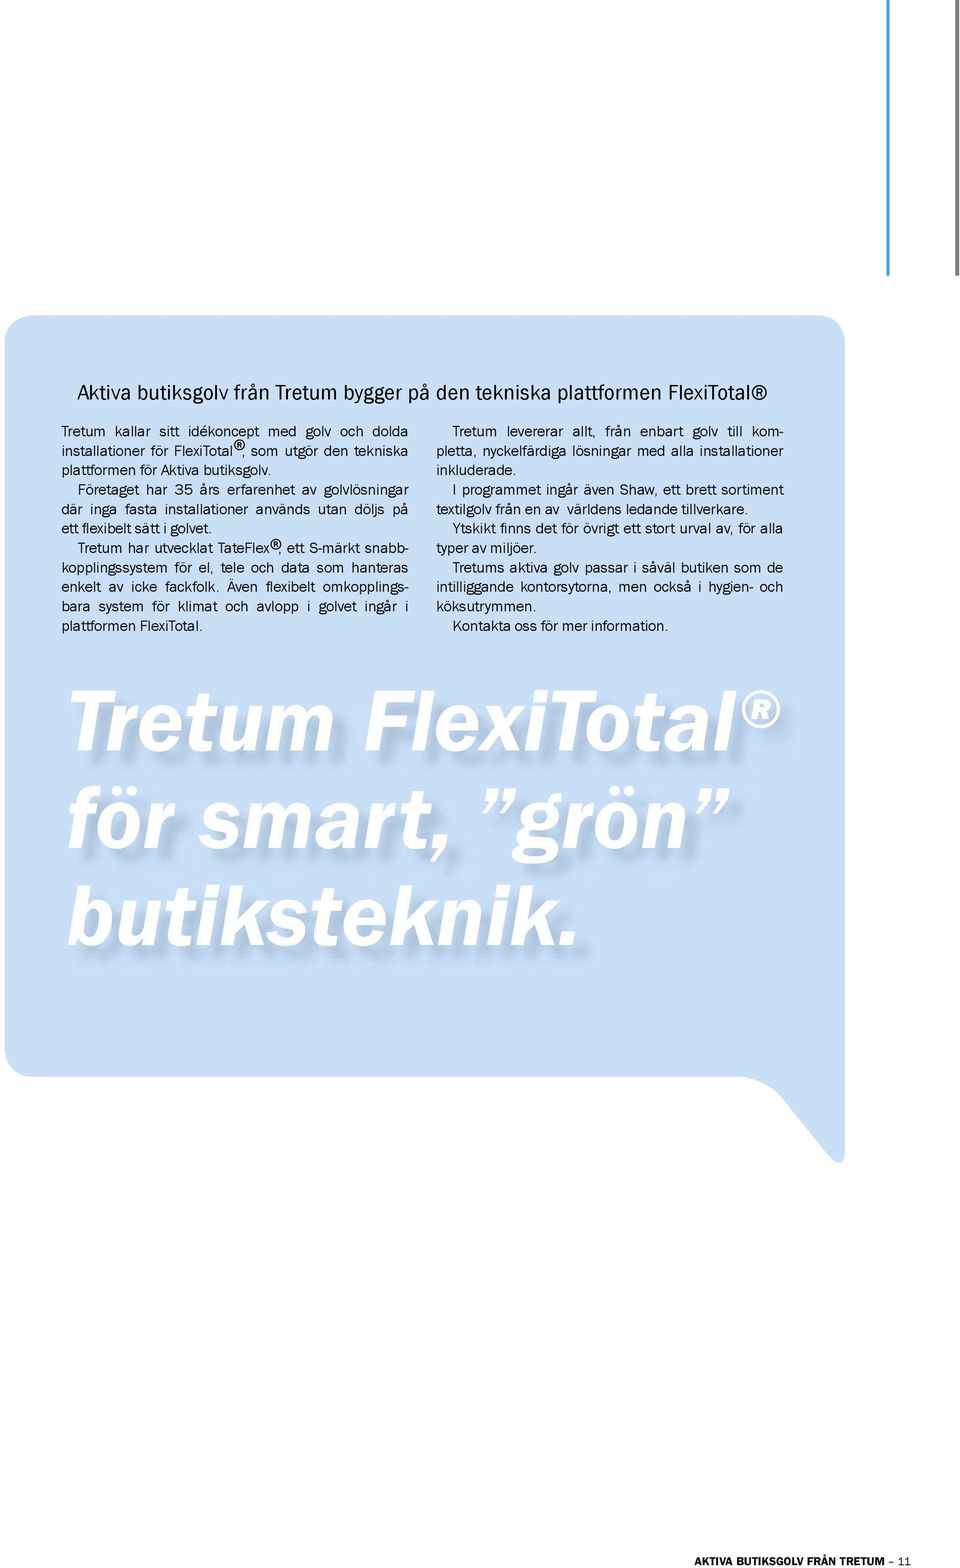 Tretum har utvecklat TateFlex, ett S-märkt snabbkopplingssystem för el, tele och data som hanteras enkelt av icke fackfolk.